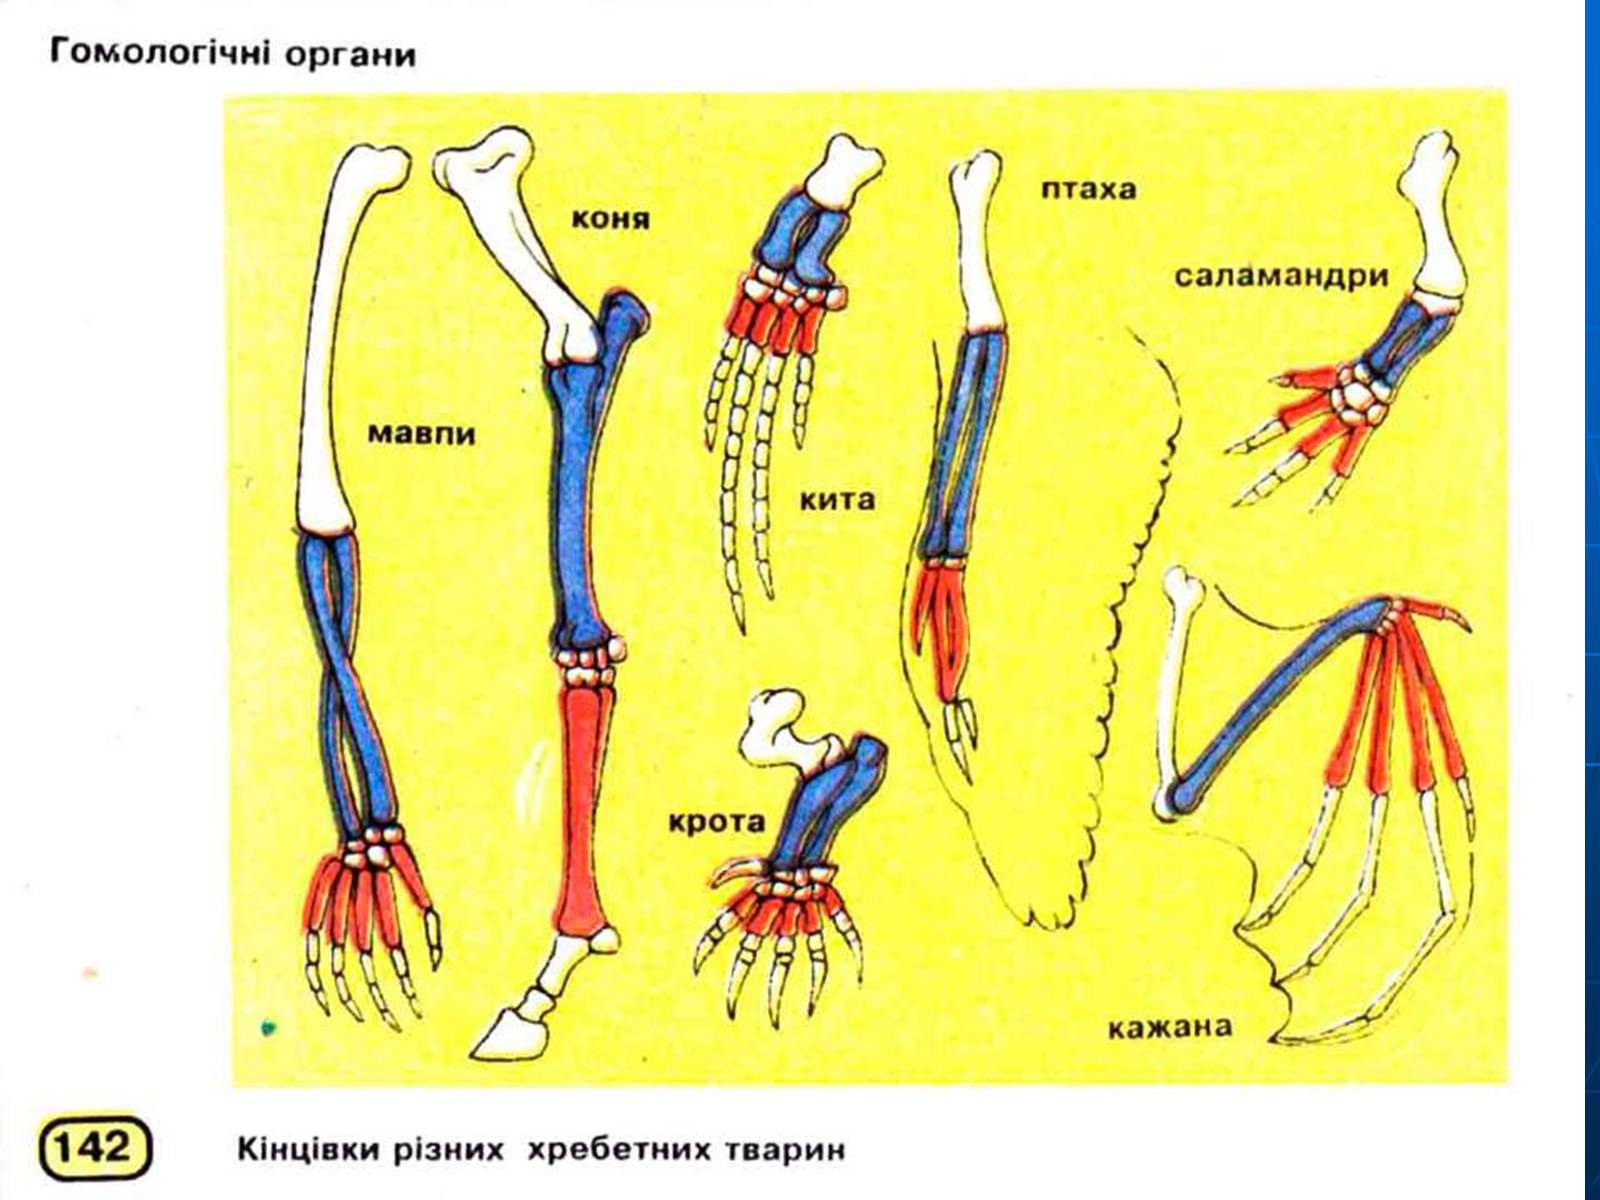 Ласты кита и роющие конечности крота. Гомологічні органи. Гомологичные органы. Гомология передних конечностей позвоночных (саламандра,. Аналогичные органы.